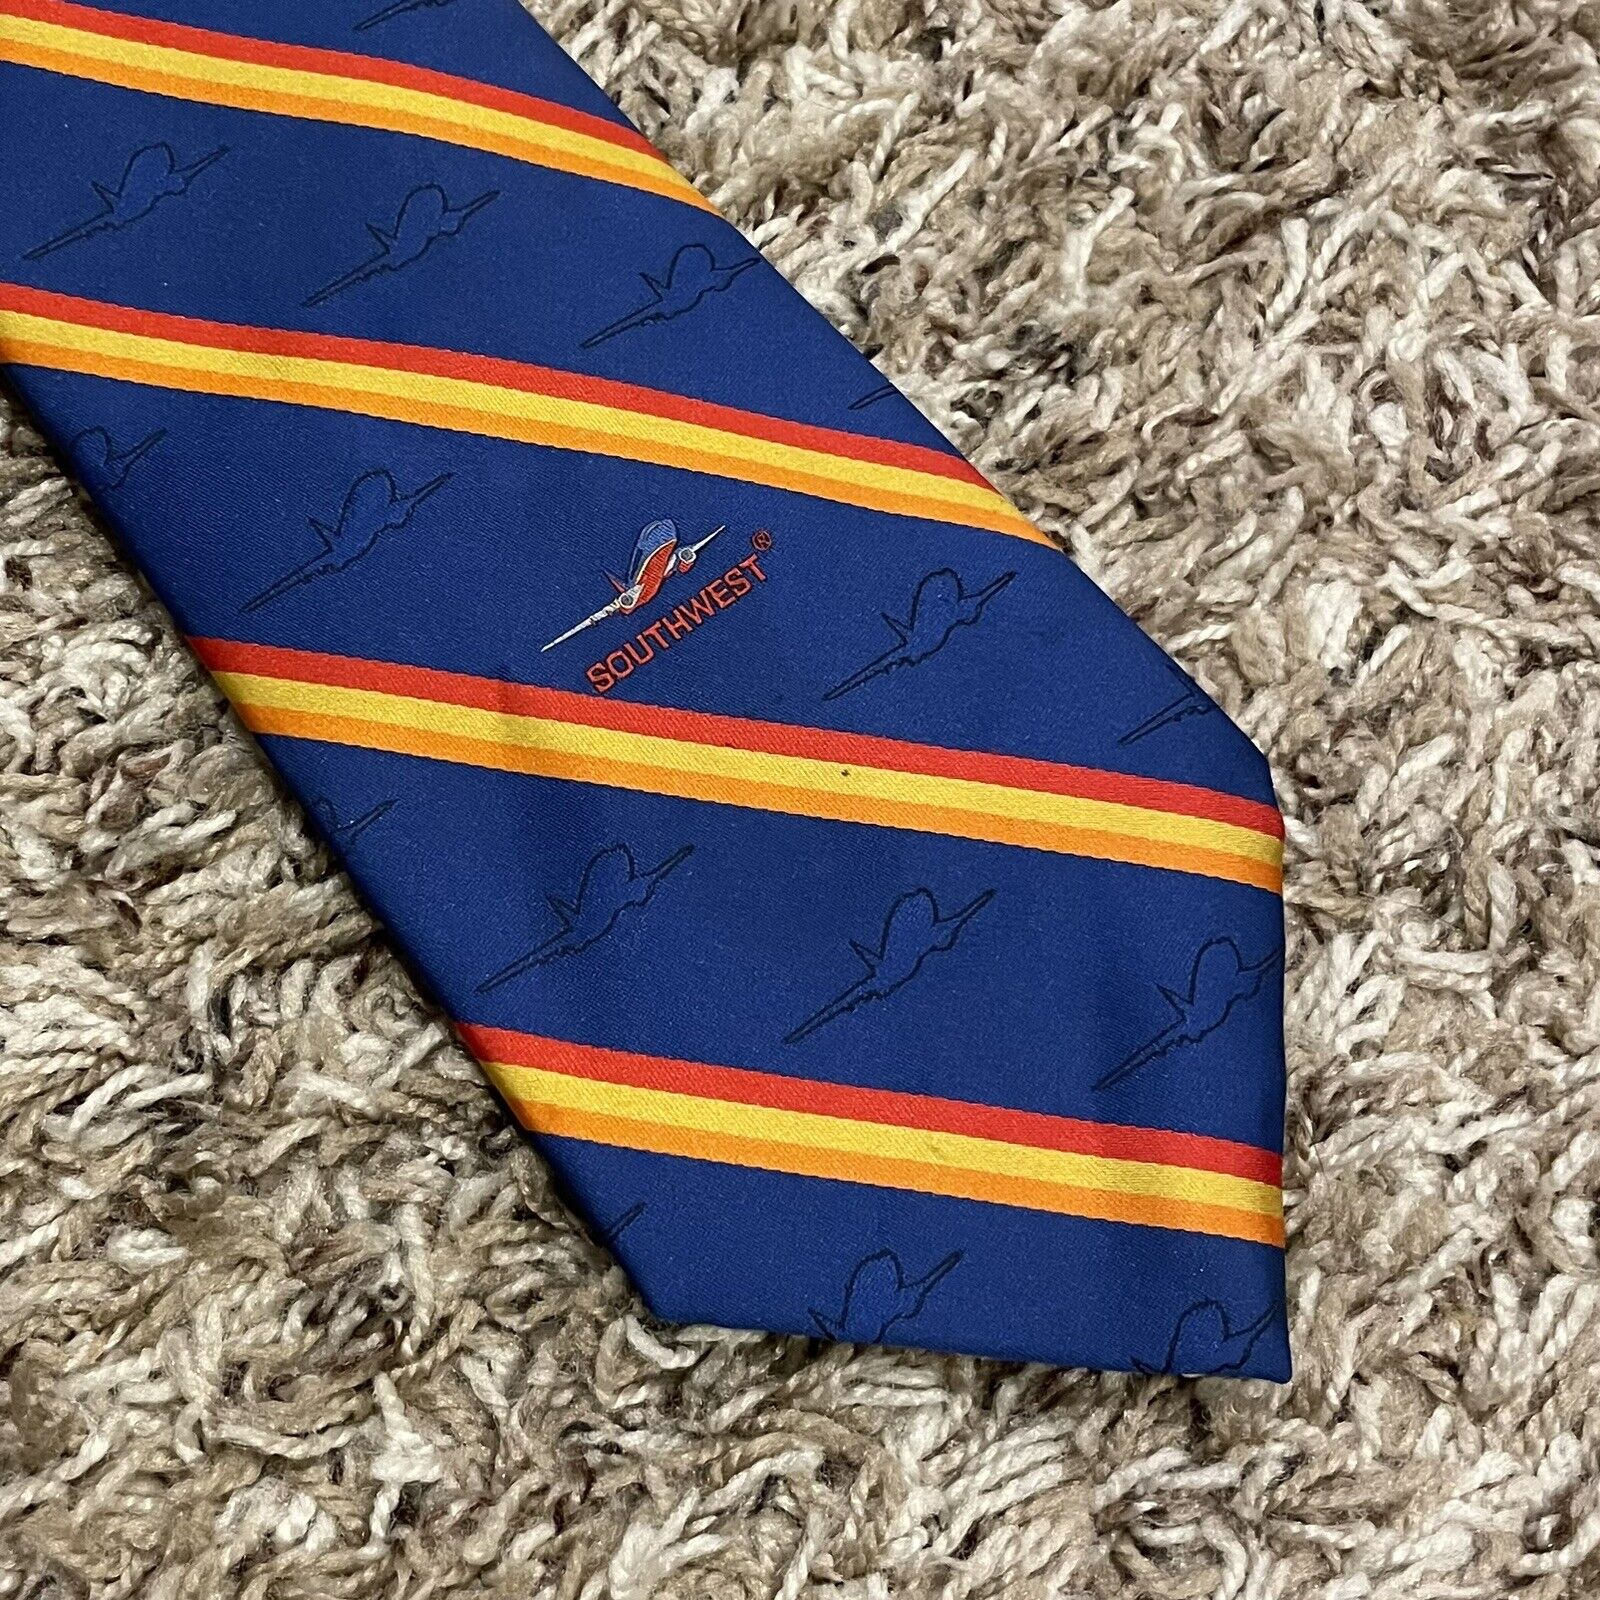 Southwest Airline Dress Uniform Tie Necktie Wolfmark Polyester Neckwear Clip-on